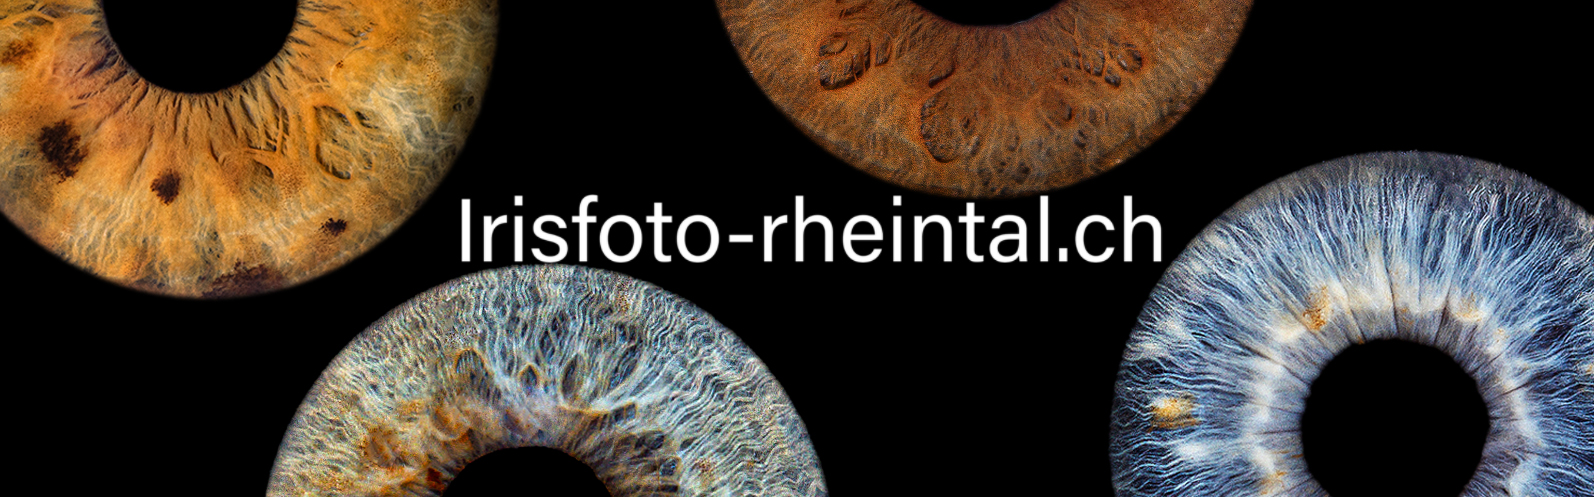 Irisfoto-rheintal.ch